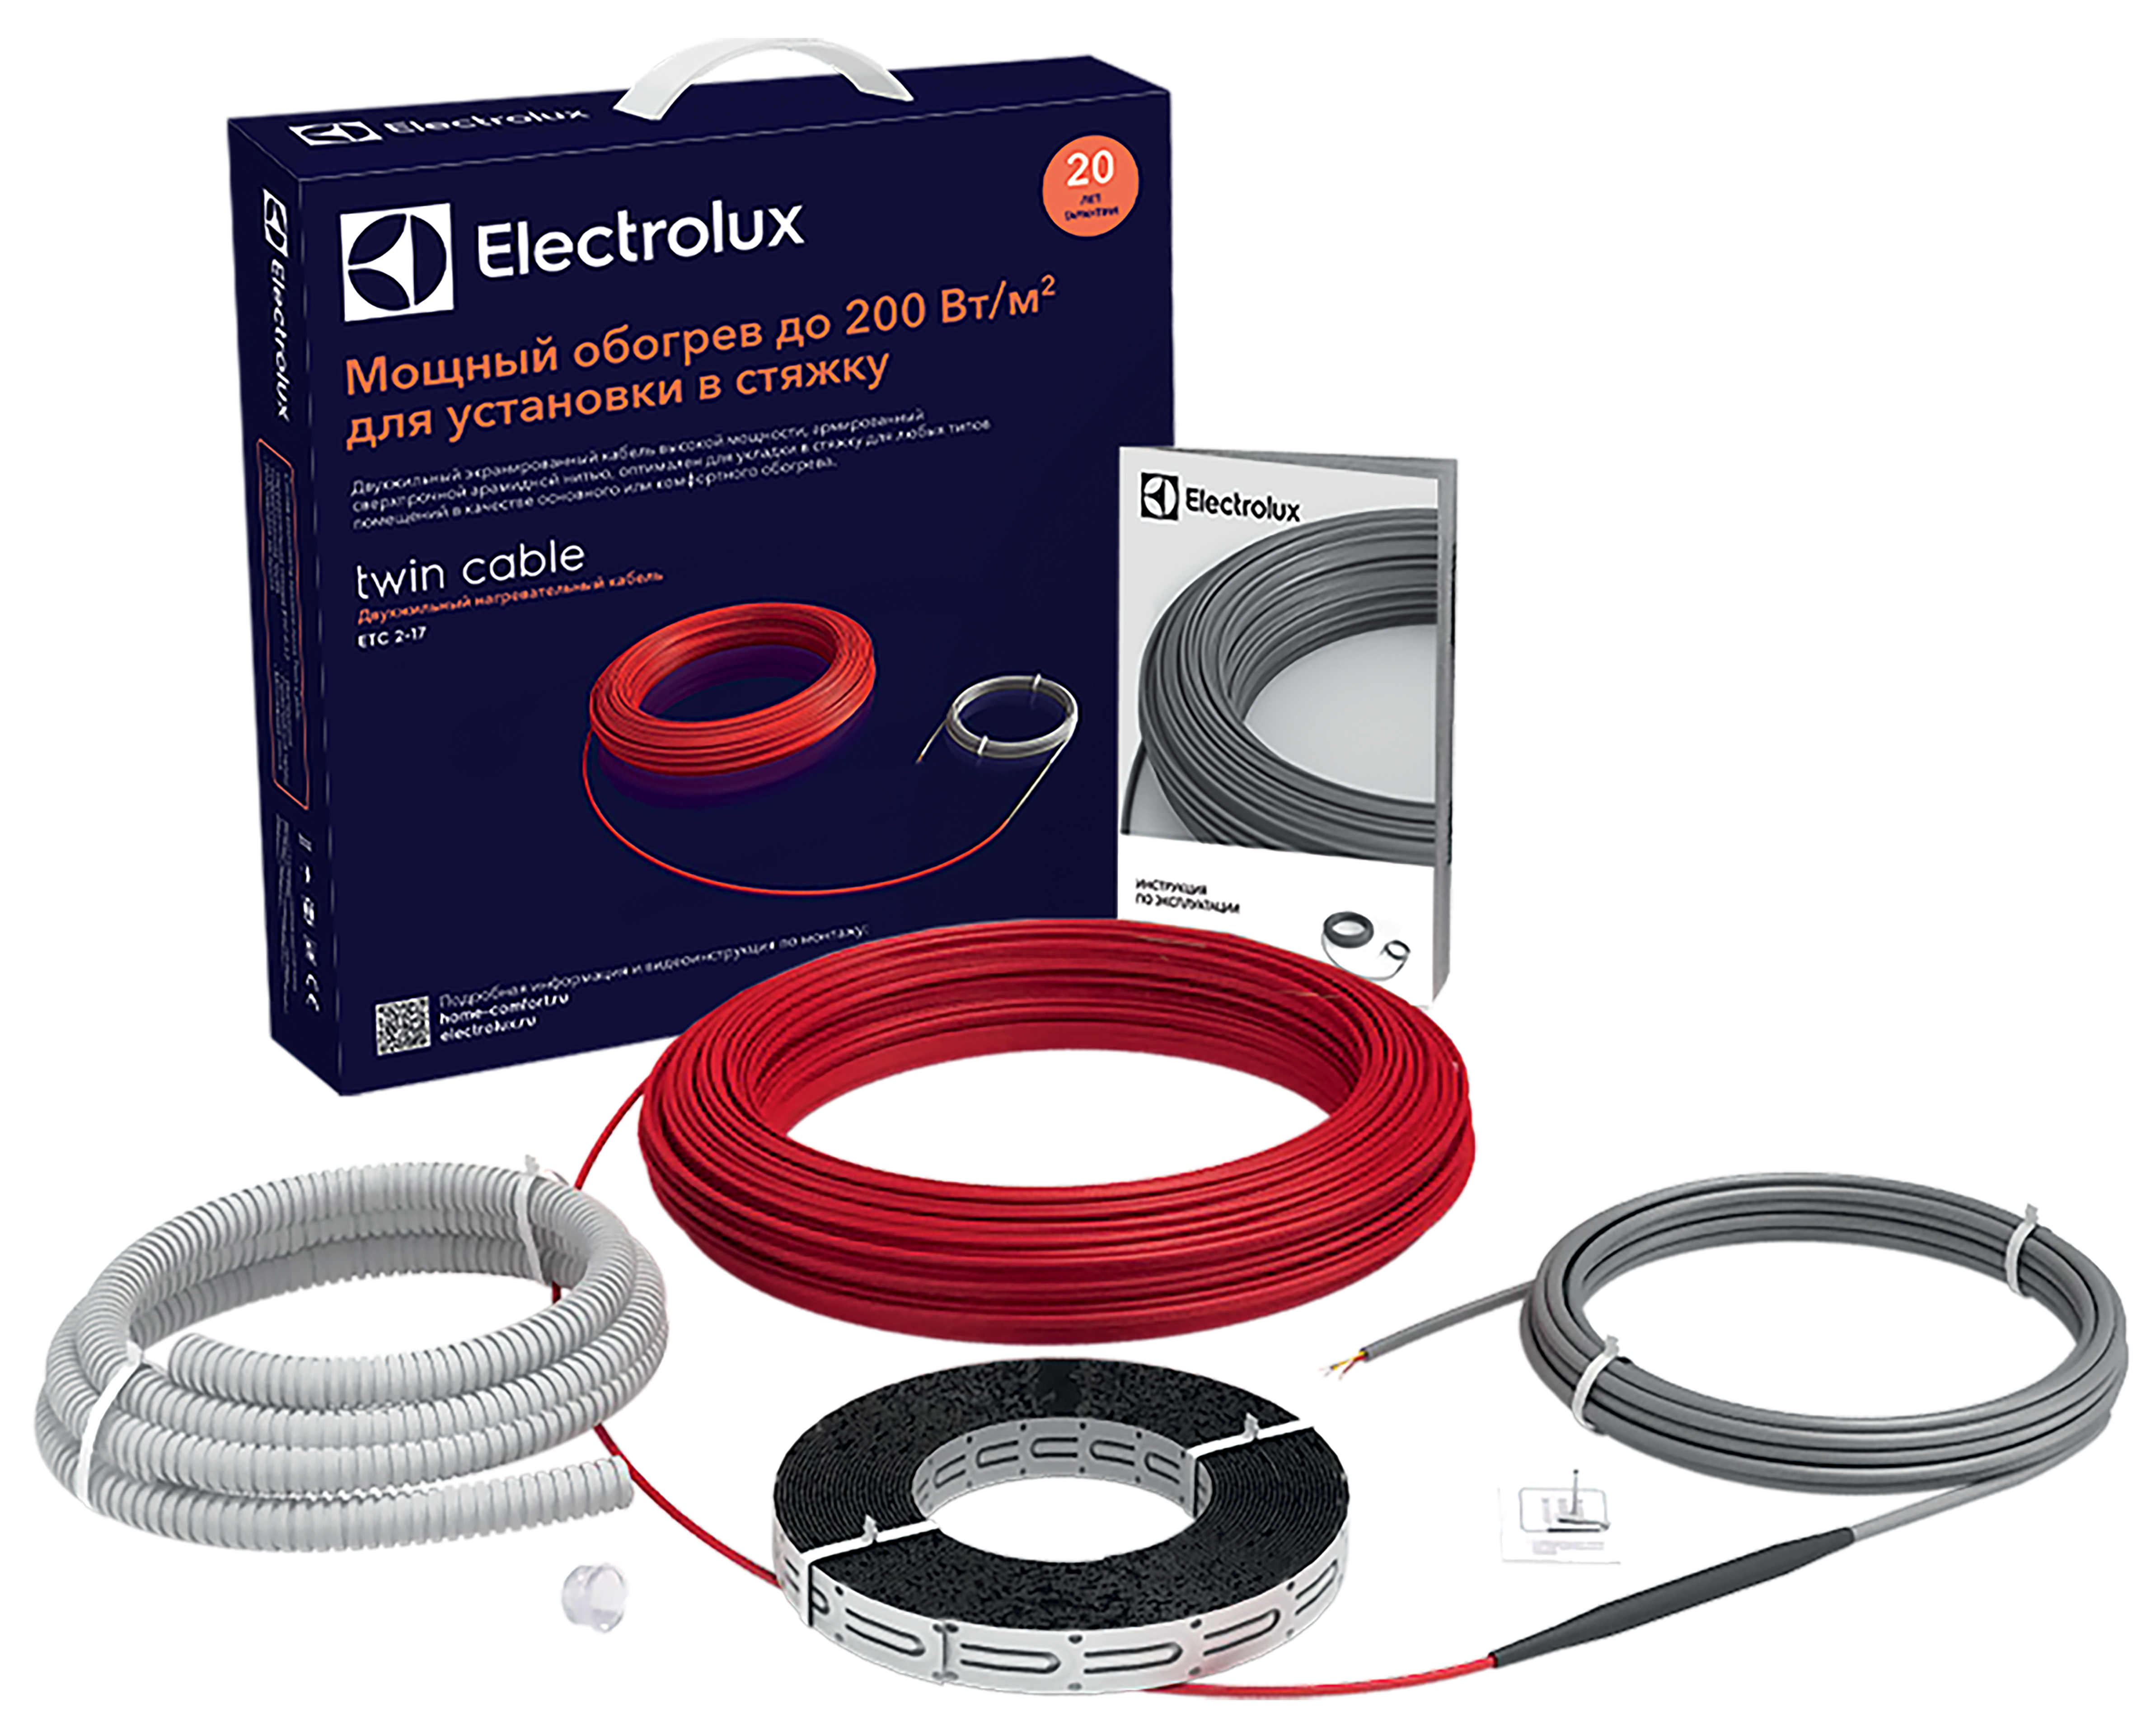 Електрична тепла підлога Electrolux Twin Cable ETC 2-17-200